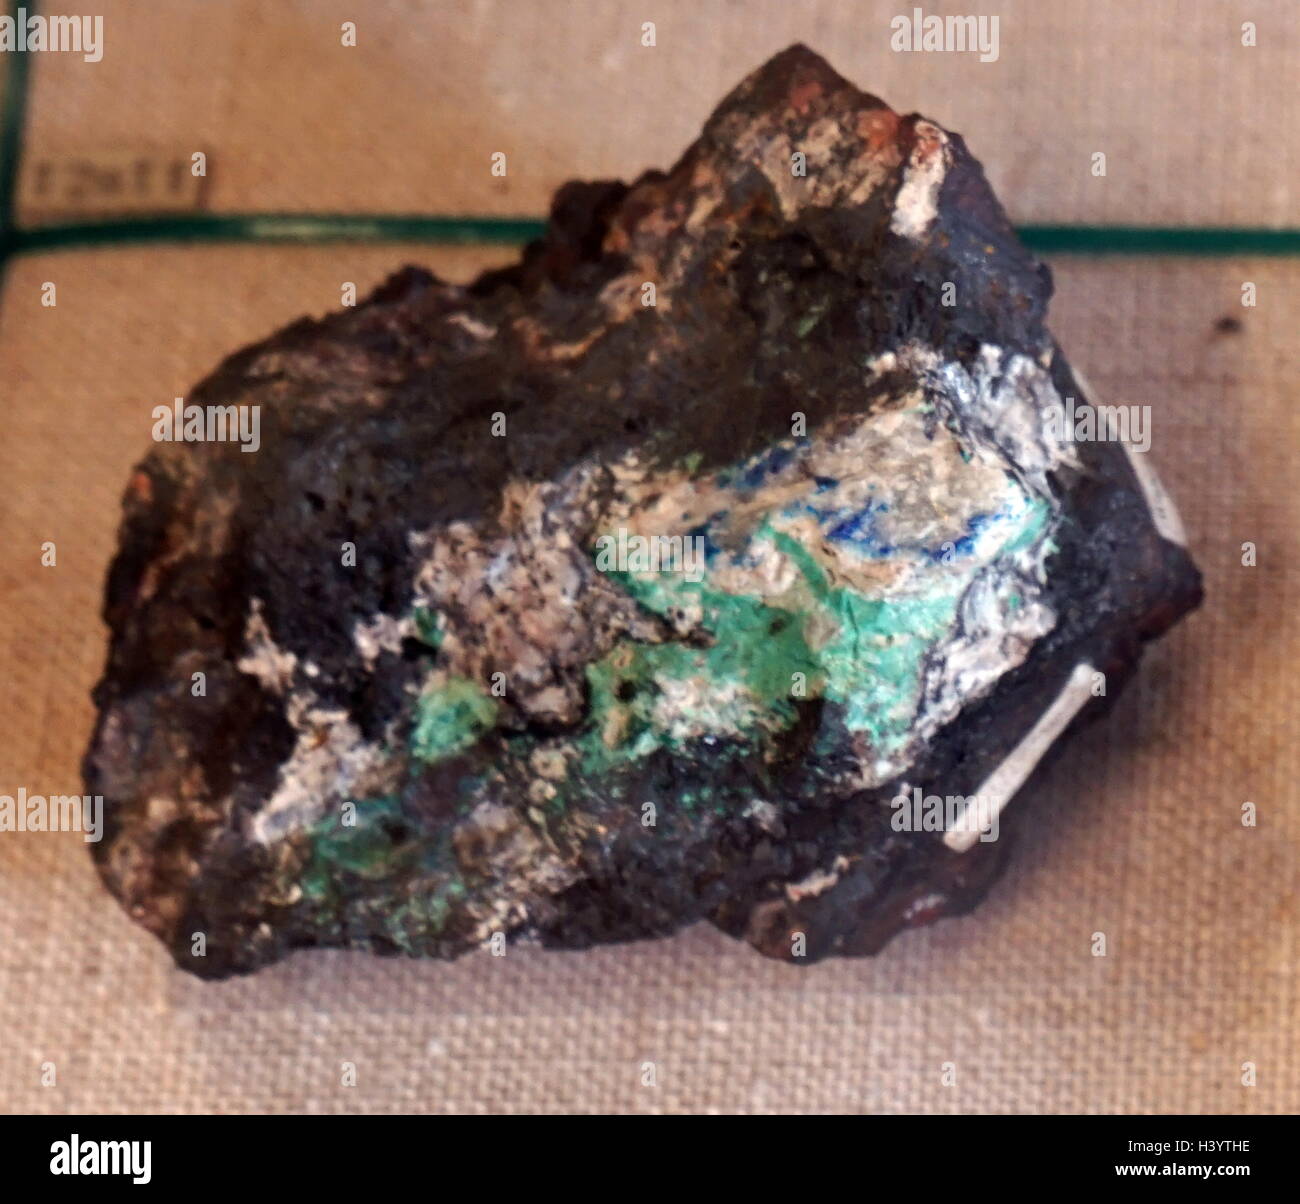 Stichprobe von limonit, ein amorphes bräunlich sekundäres Mineral, bestehend aus einer Mischung von Hydrous Ferric oxide, wichtiger als Eisenerz. Vom 21. Jahrhundert Stockfoto